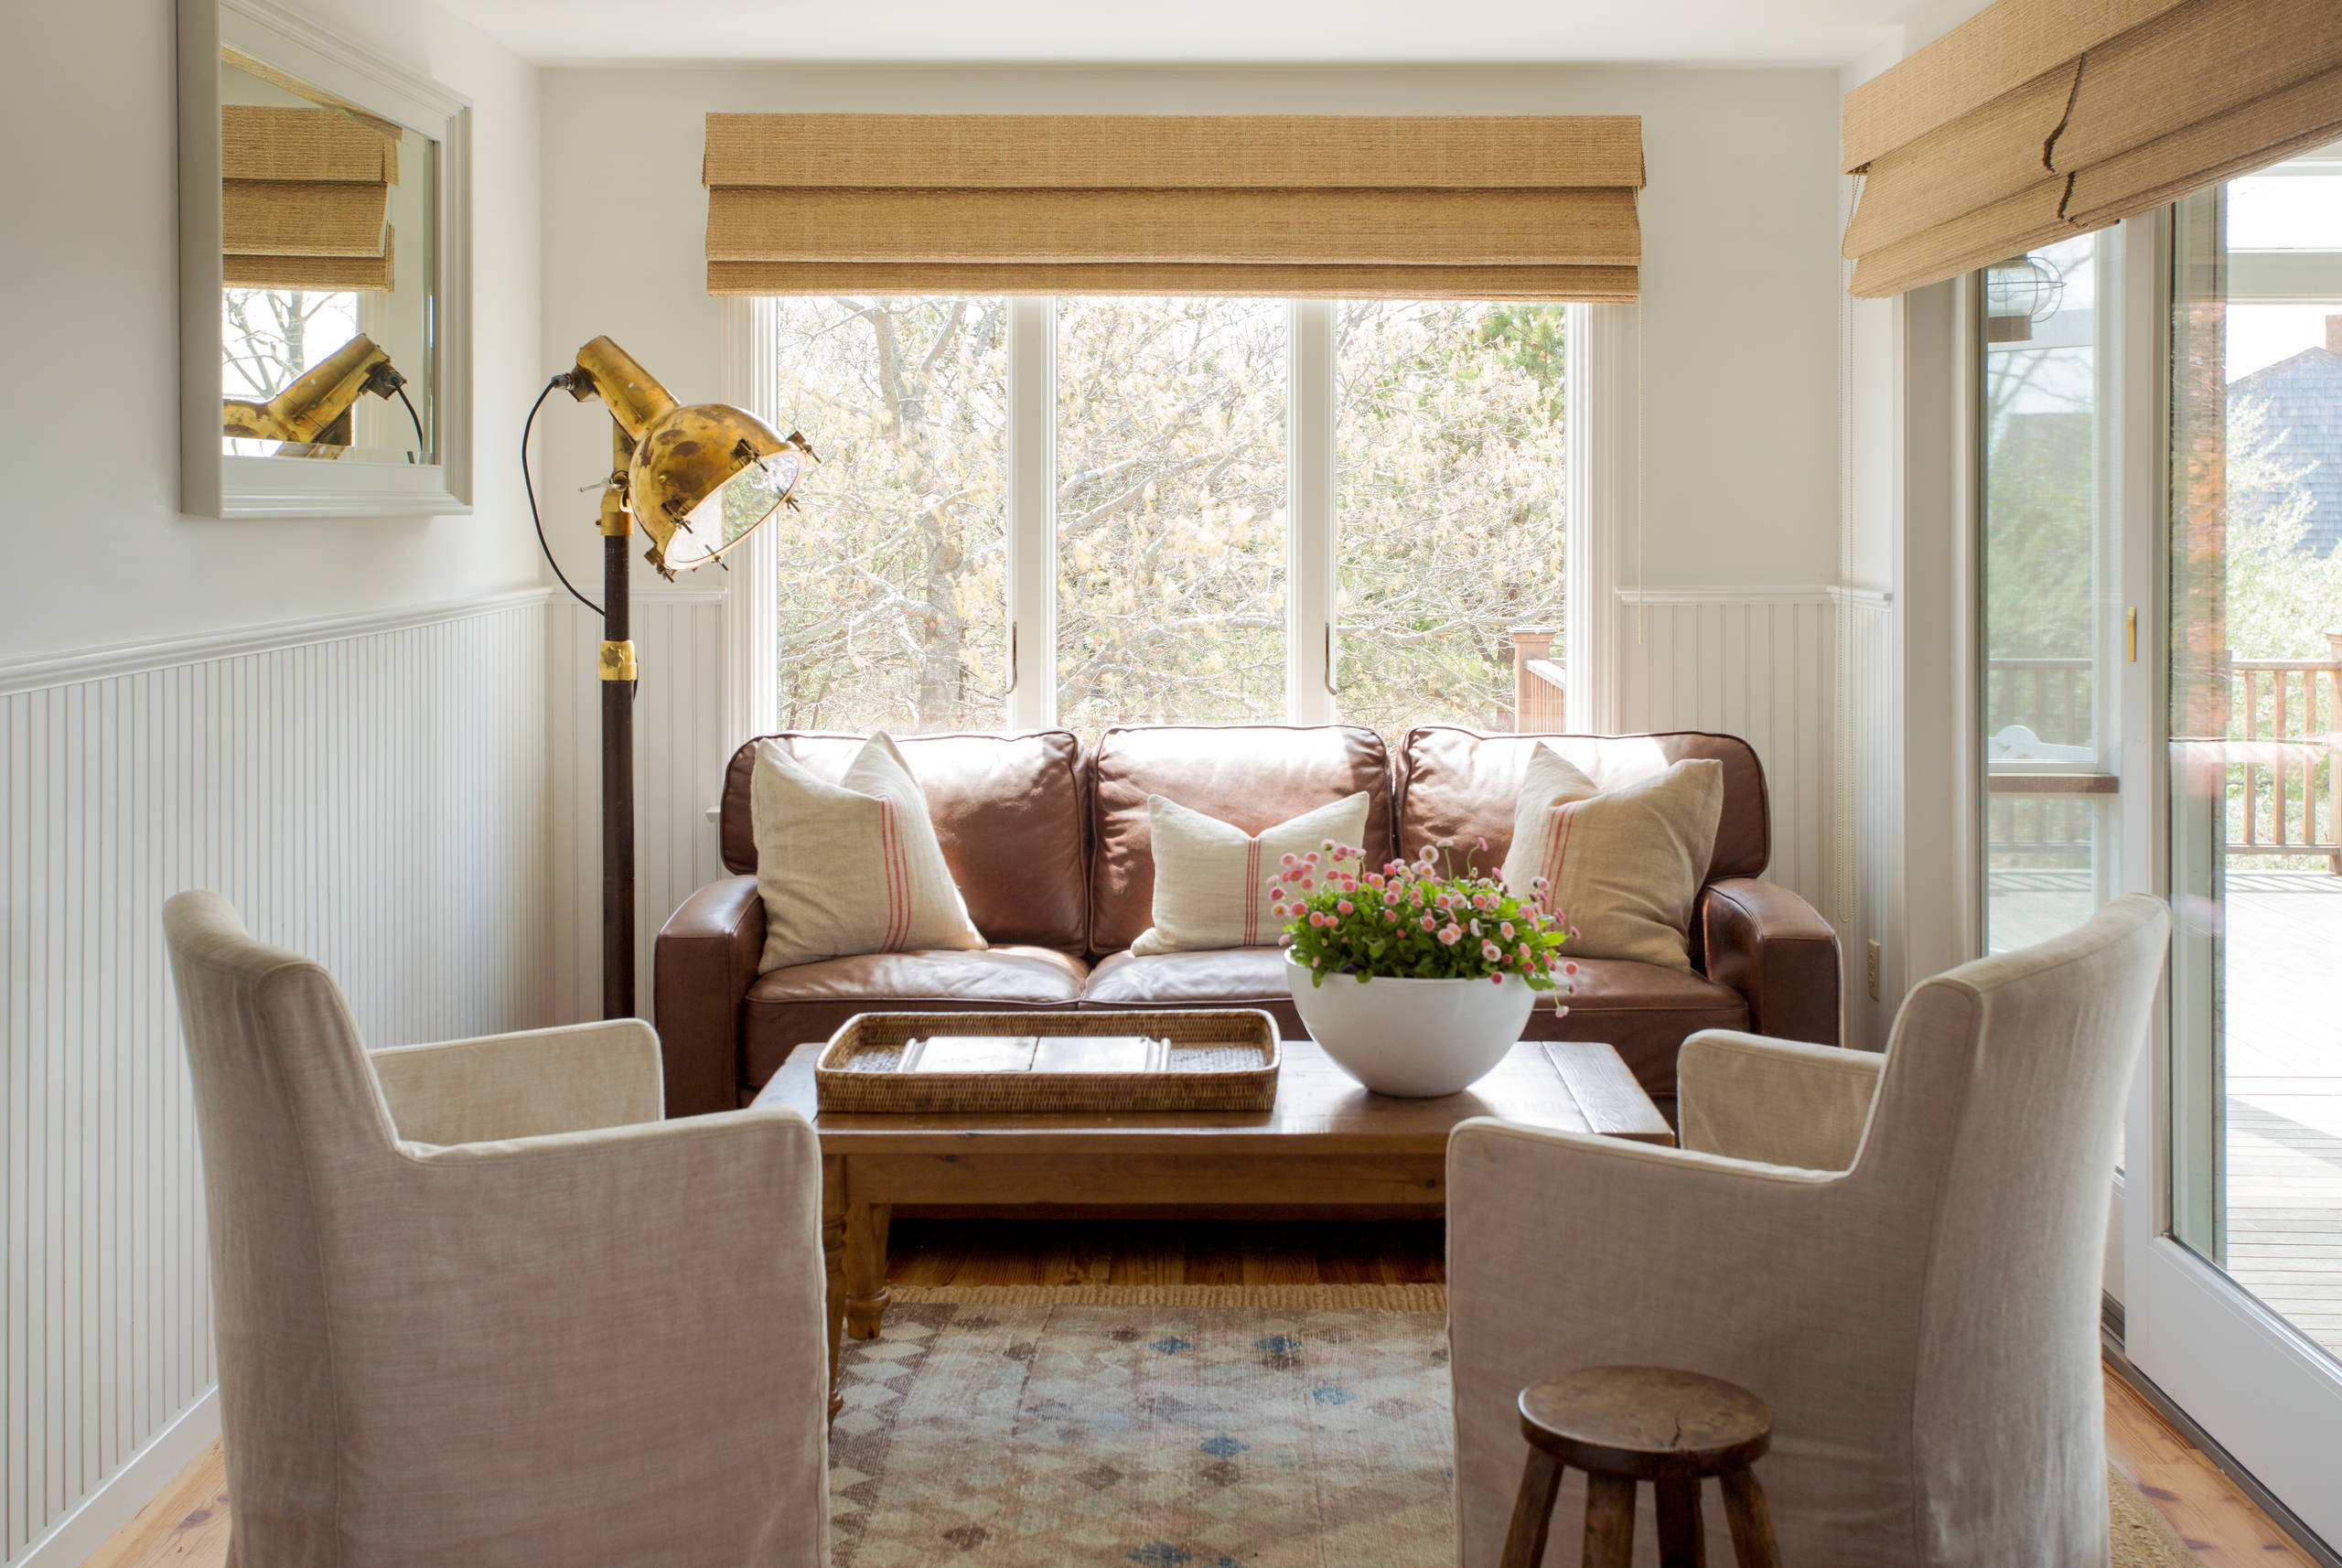 Eine ausgezeichnete Designlösung wird ein Wohnzimmer in Beigetönen sein, es wird elegant und geschmackvoll aussehen.